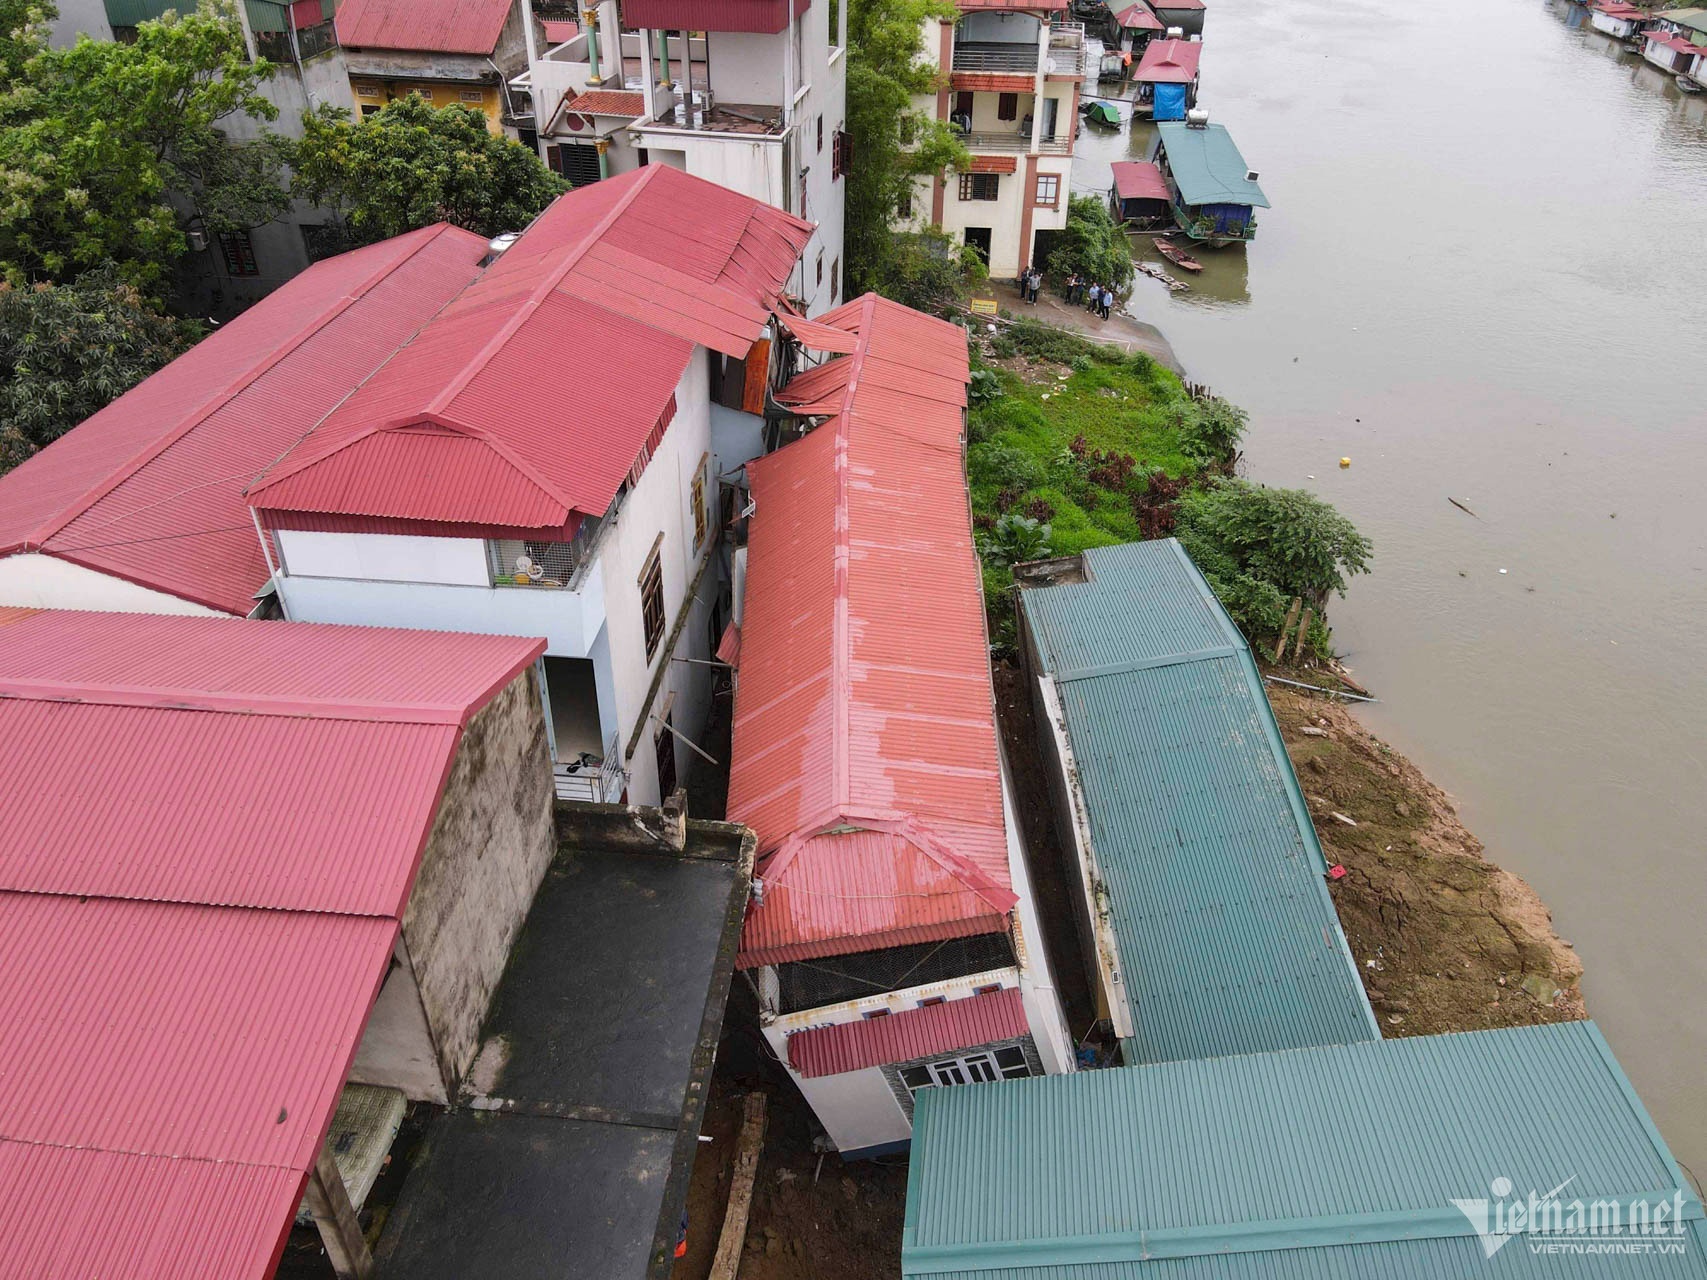 Bắc Ninh đề xuất tháo dỡ tất cả nhà đã sụt lún ở bờ sông Cầu - ảnh 1